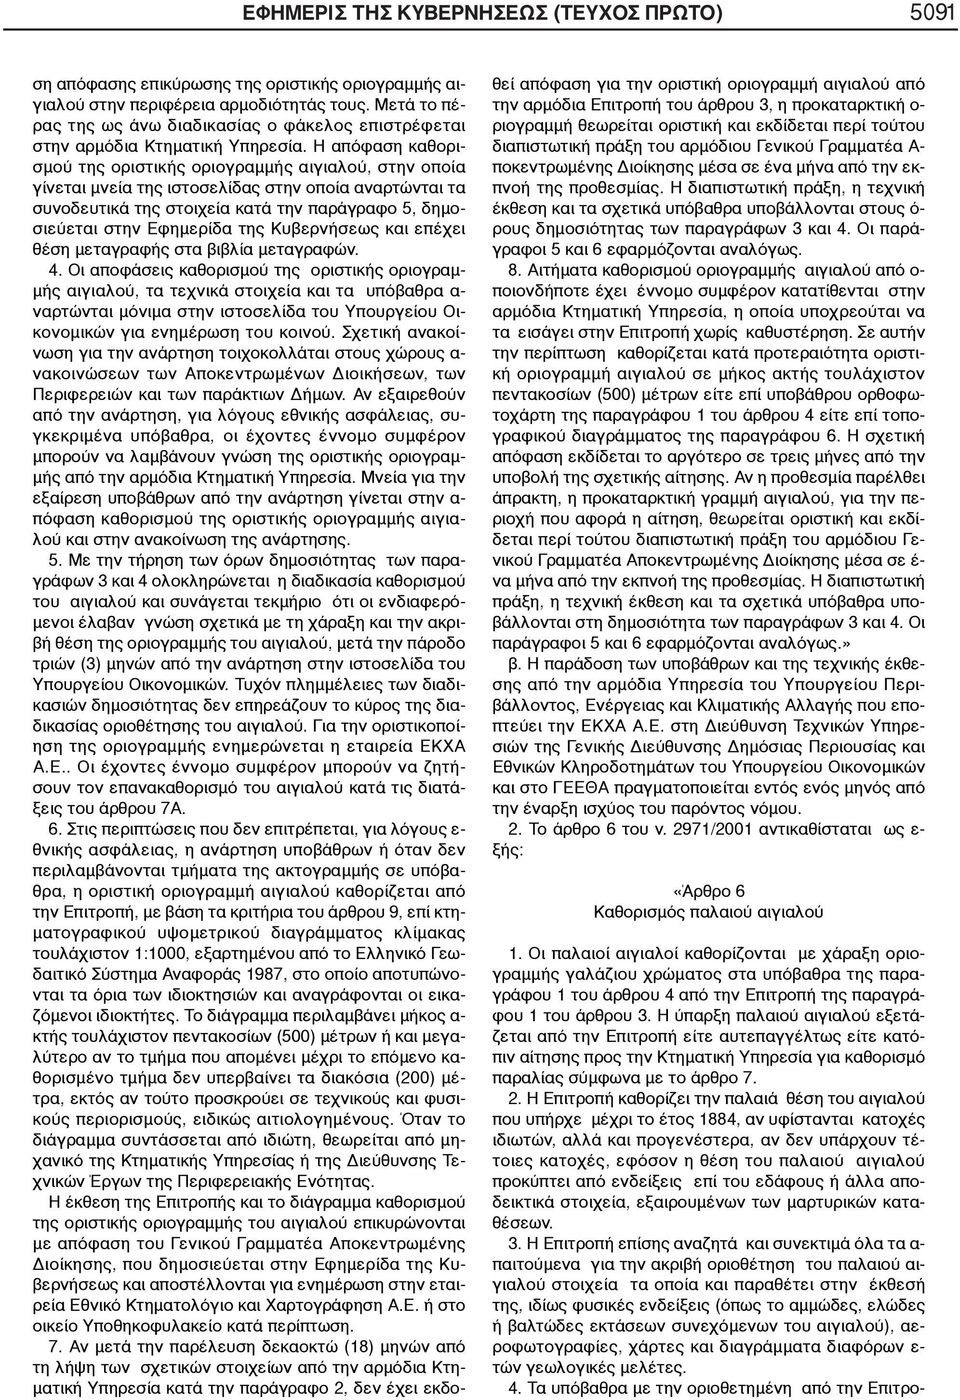 Η απόφαση καθορισμού της οριστικής οριογραμμής αιγιαλού, στην οποία γίνεται μνεία της ιστοσελίδας στην οποία αναρτώνται τα συνοδευτικά της στοιχεία κατά την παράγραφο 5, δημοσιεύεται στην Εφημερίδα